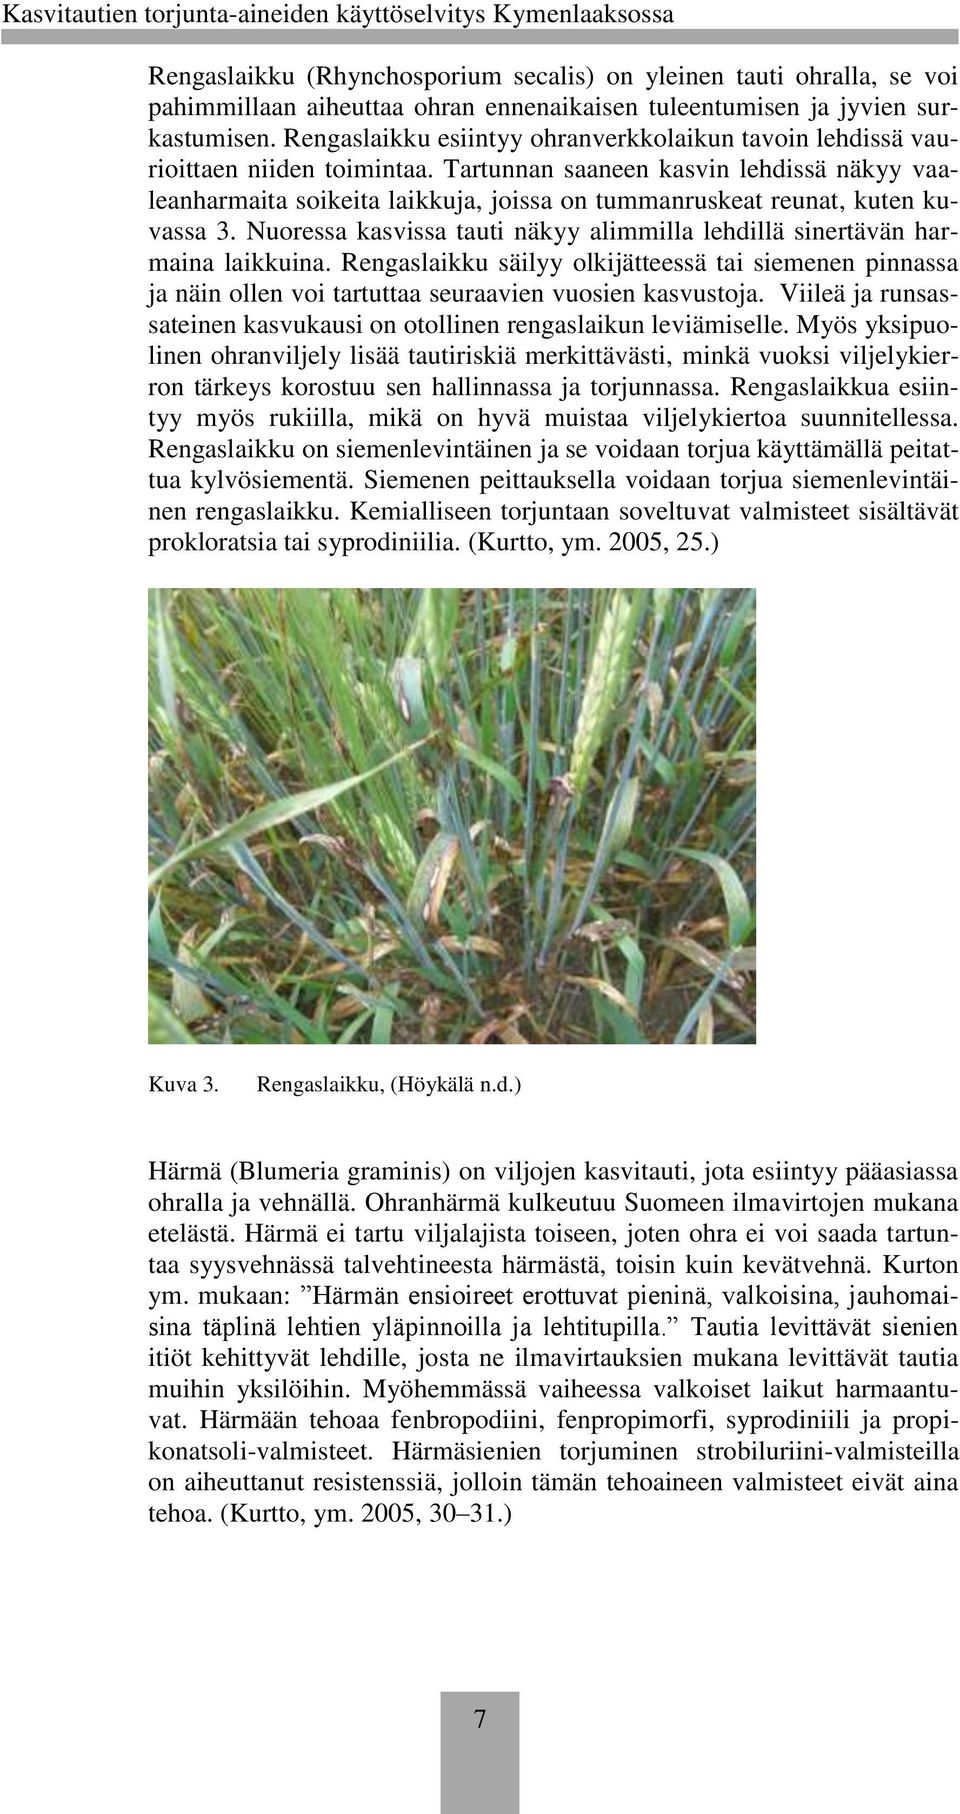 Tartunnan saaneen kasvin lehdissä näkyy vaaleanharmaita soikeita laikkuja, joissa on tummanruskeat reunat, kuten kuvassa 3.